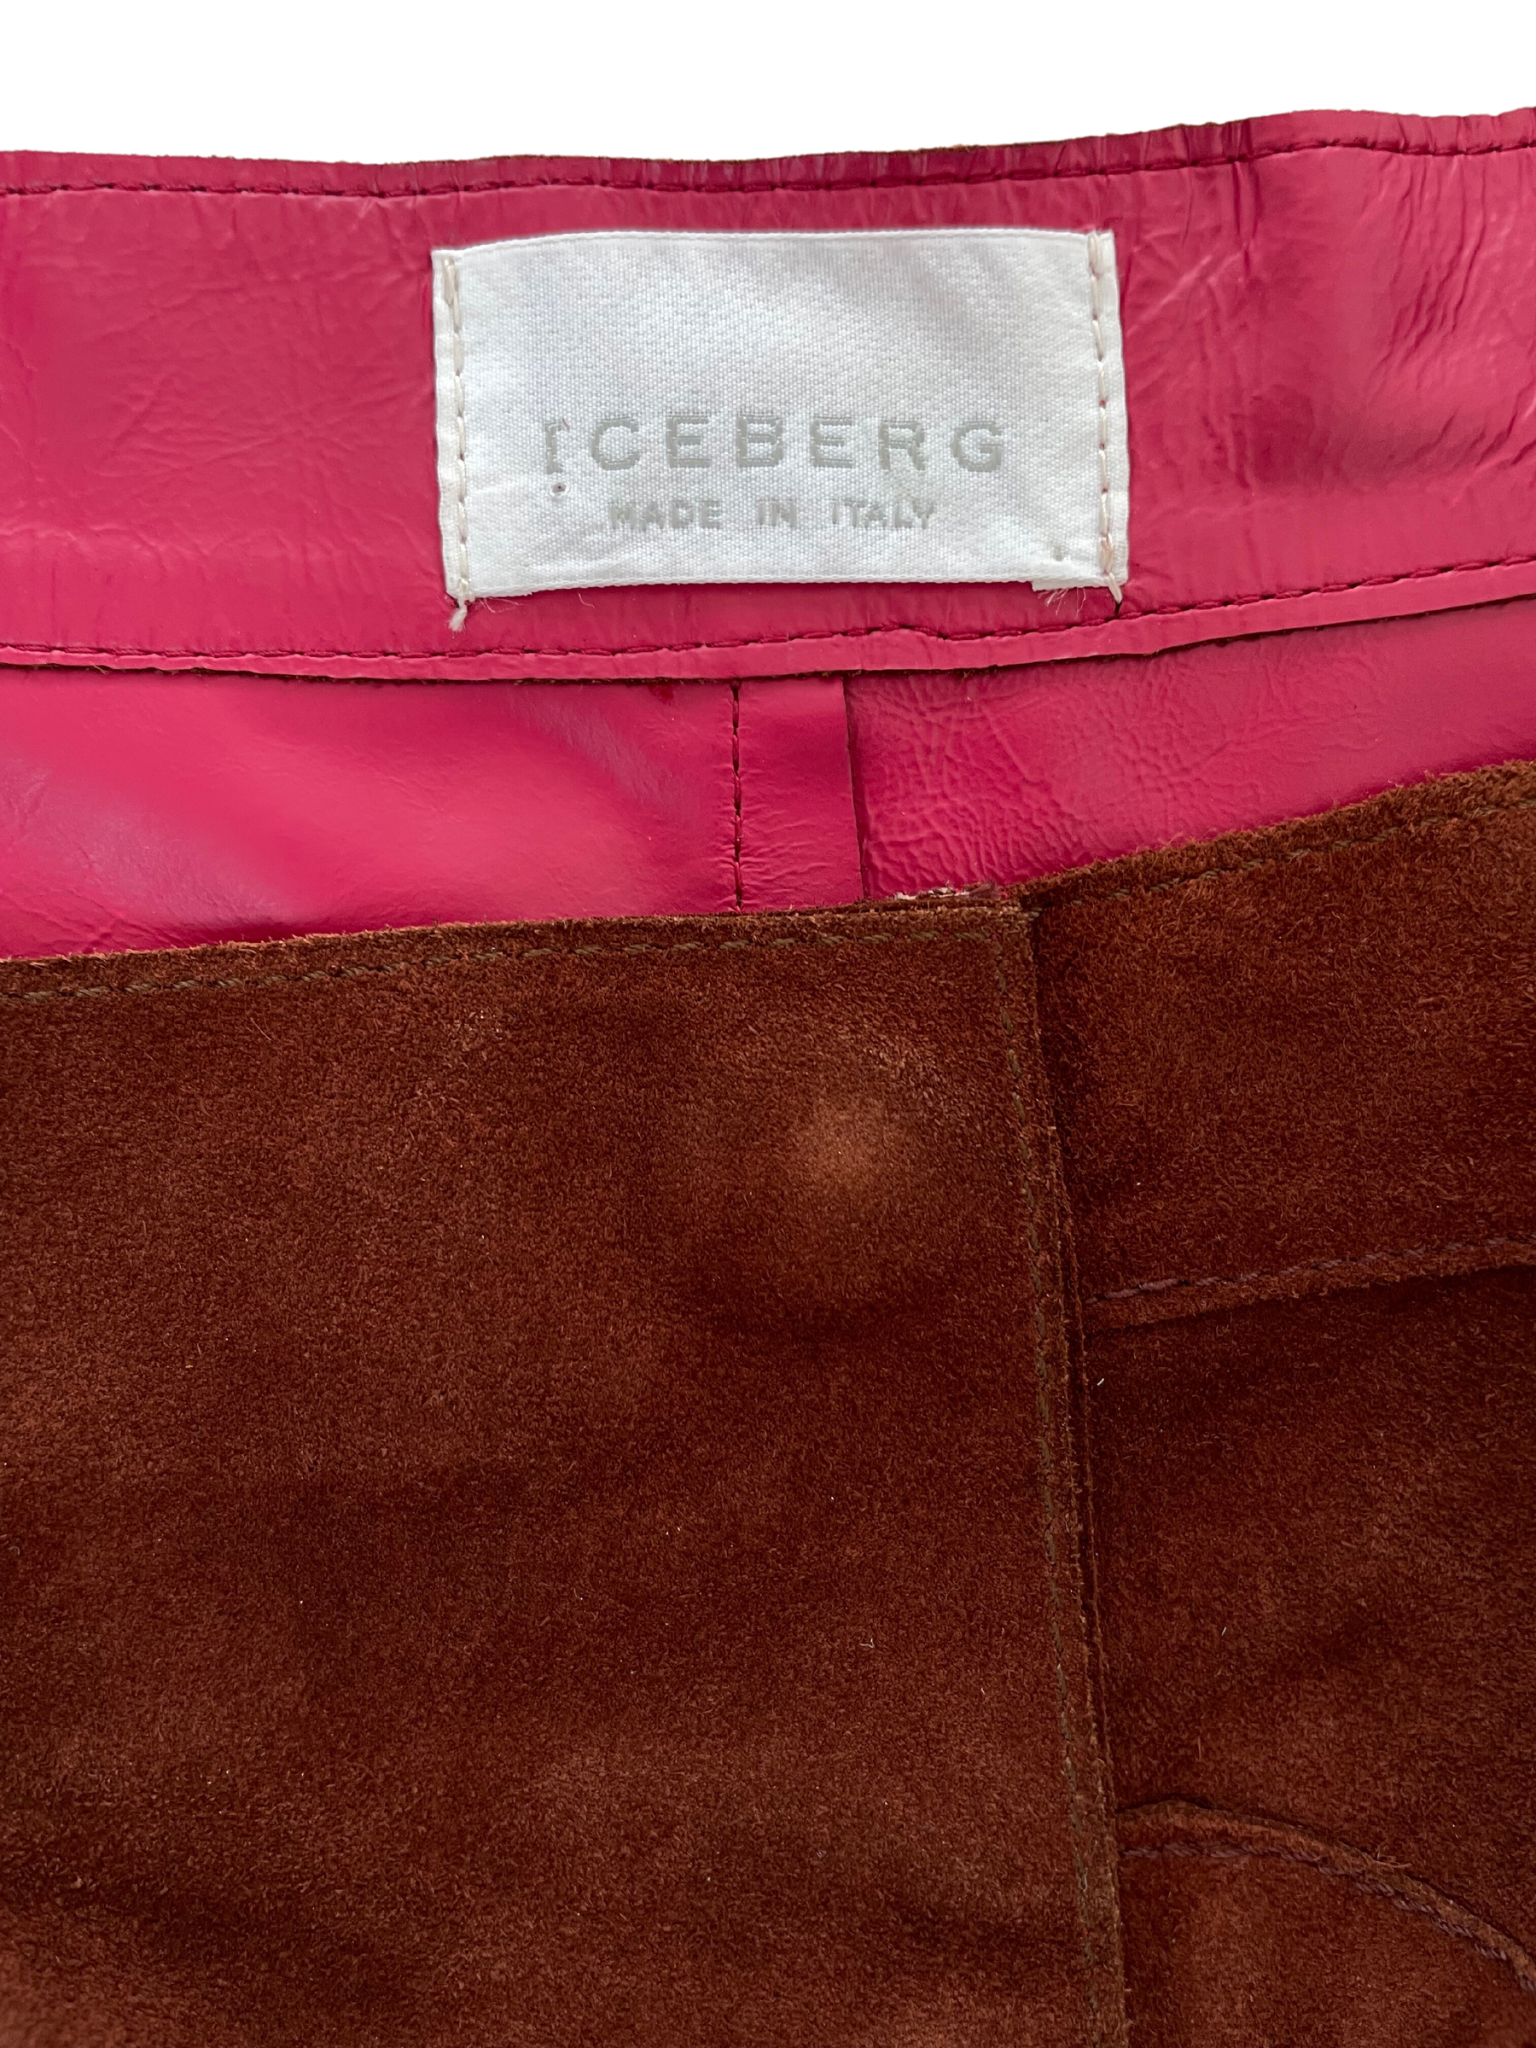 Vintage Iceberg leather skirt